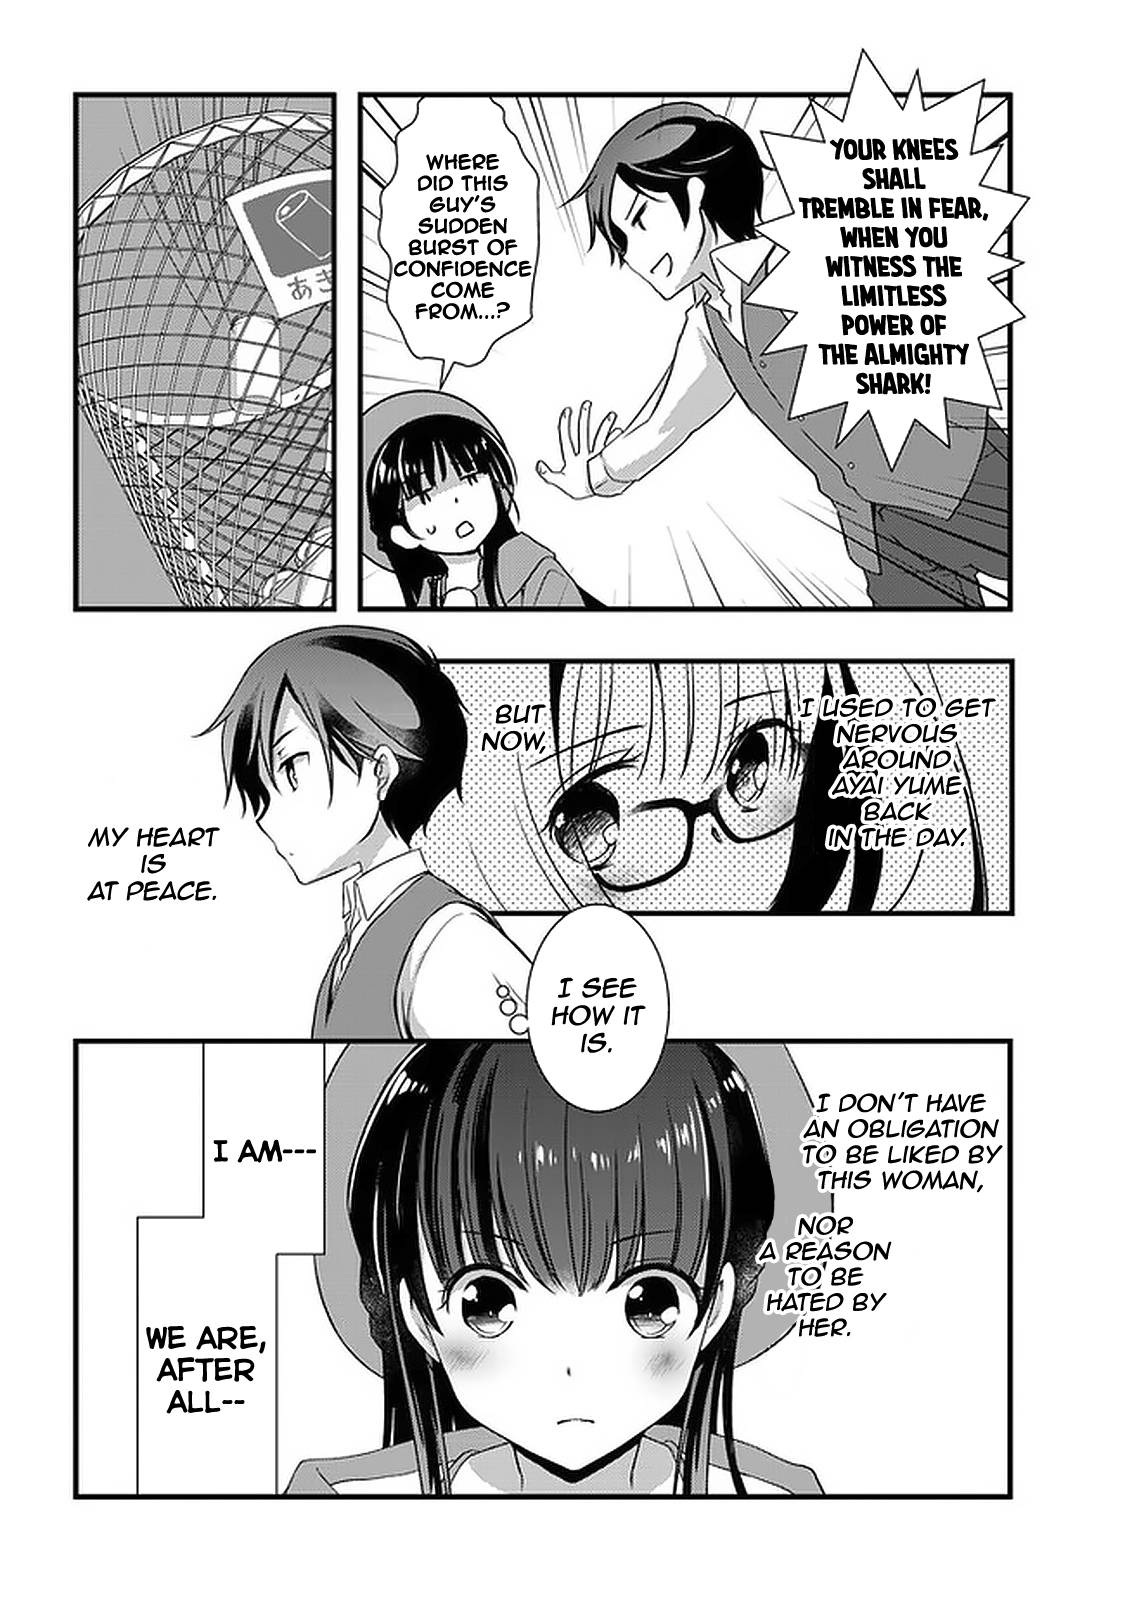 Mamahaha no Tsurego ga Moto Kano datta (Manga) - Chapter 15.1